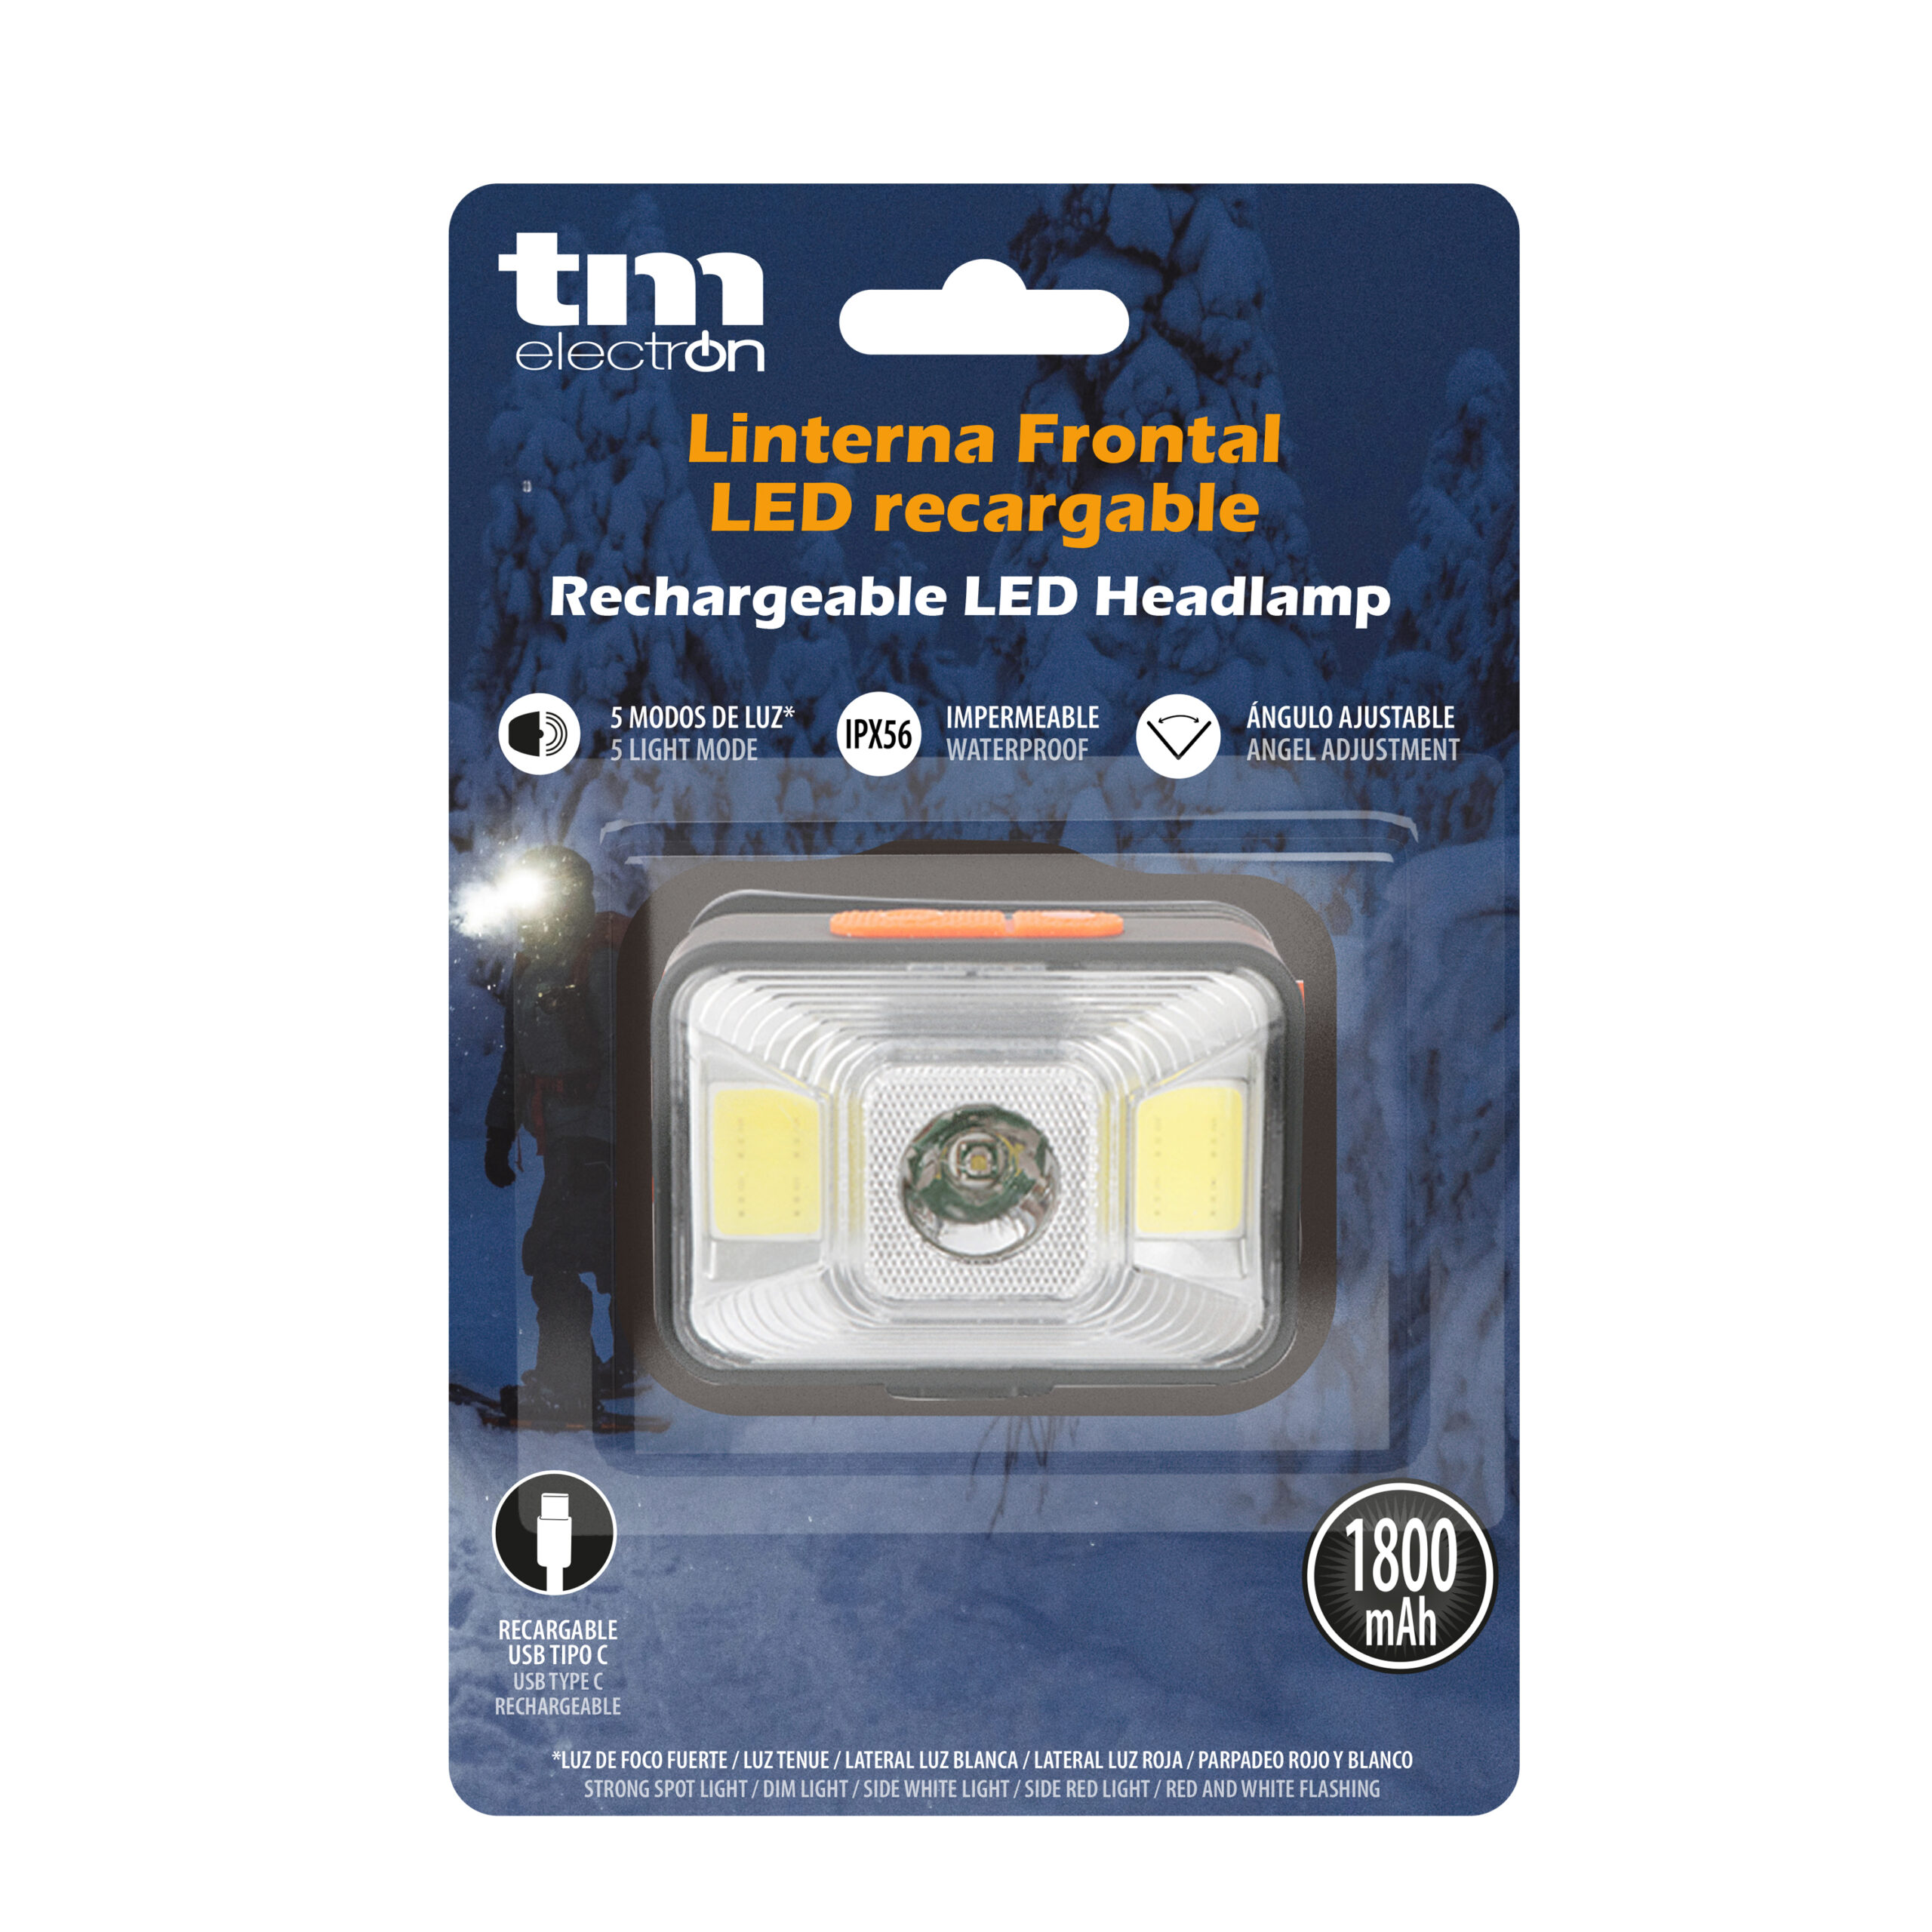 Linterna frontal LED recargable